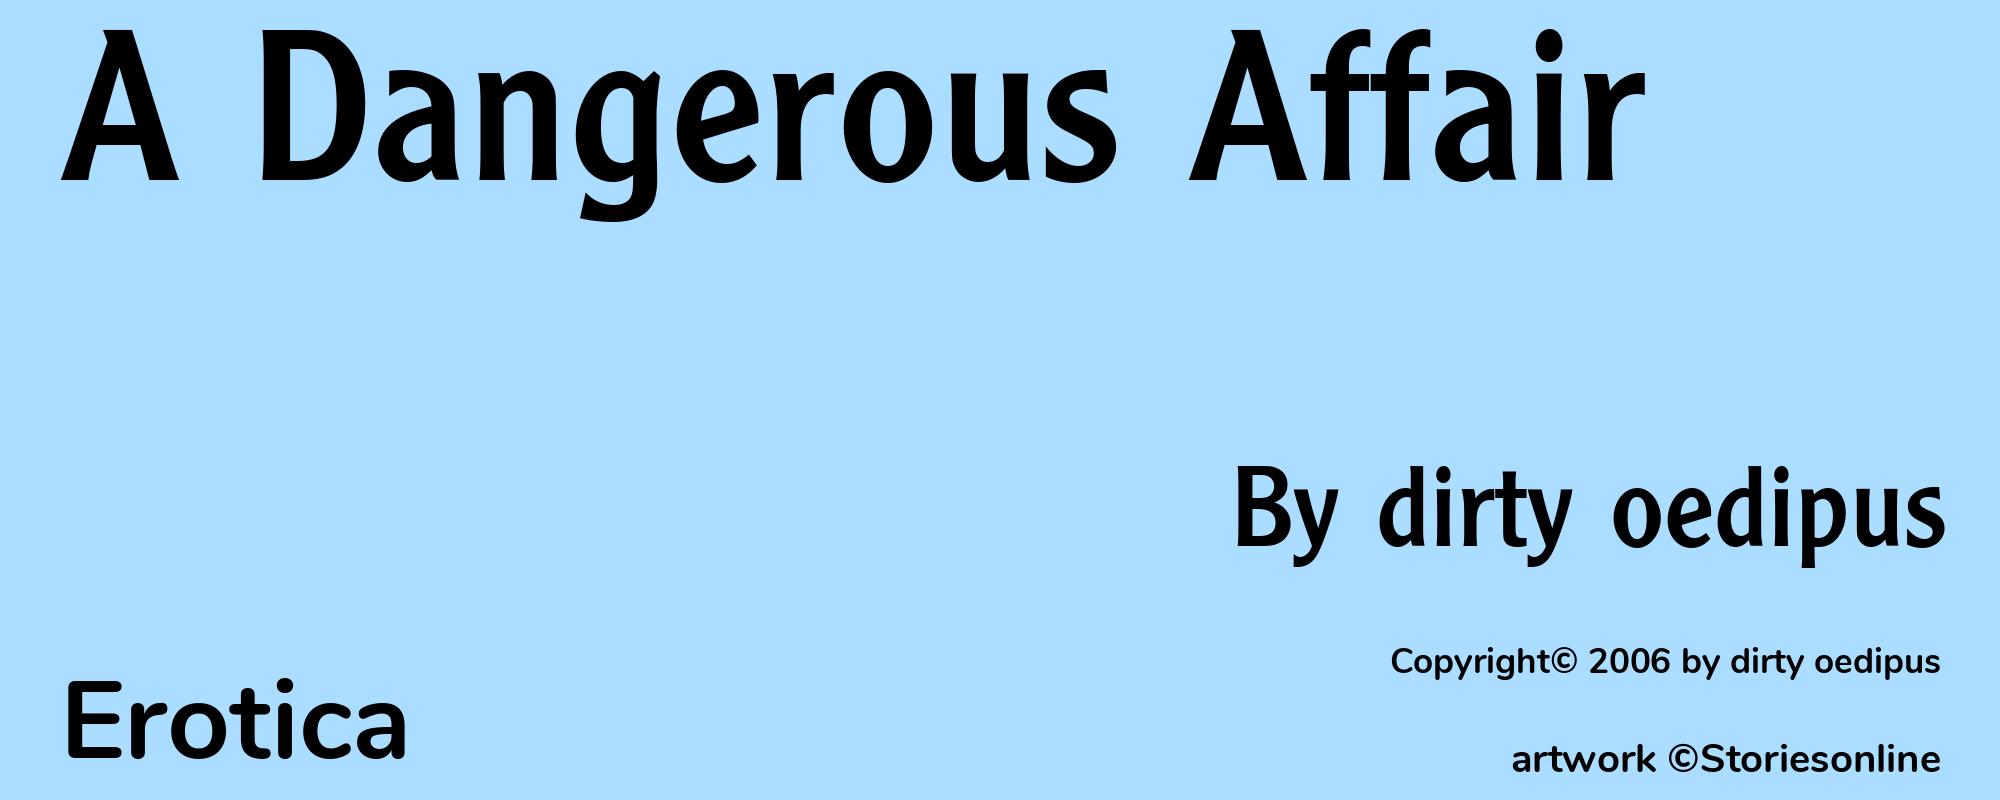 A Dangerous Affair - Cover